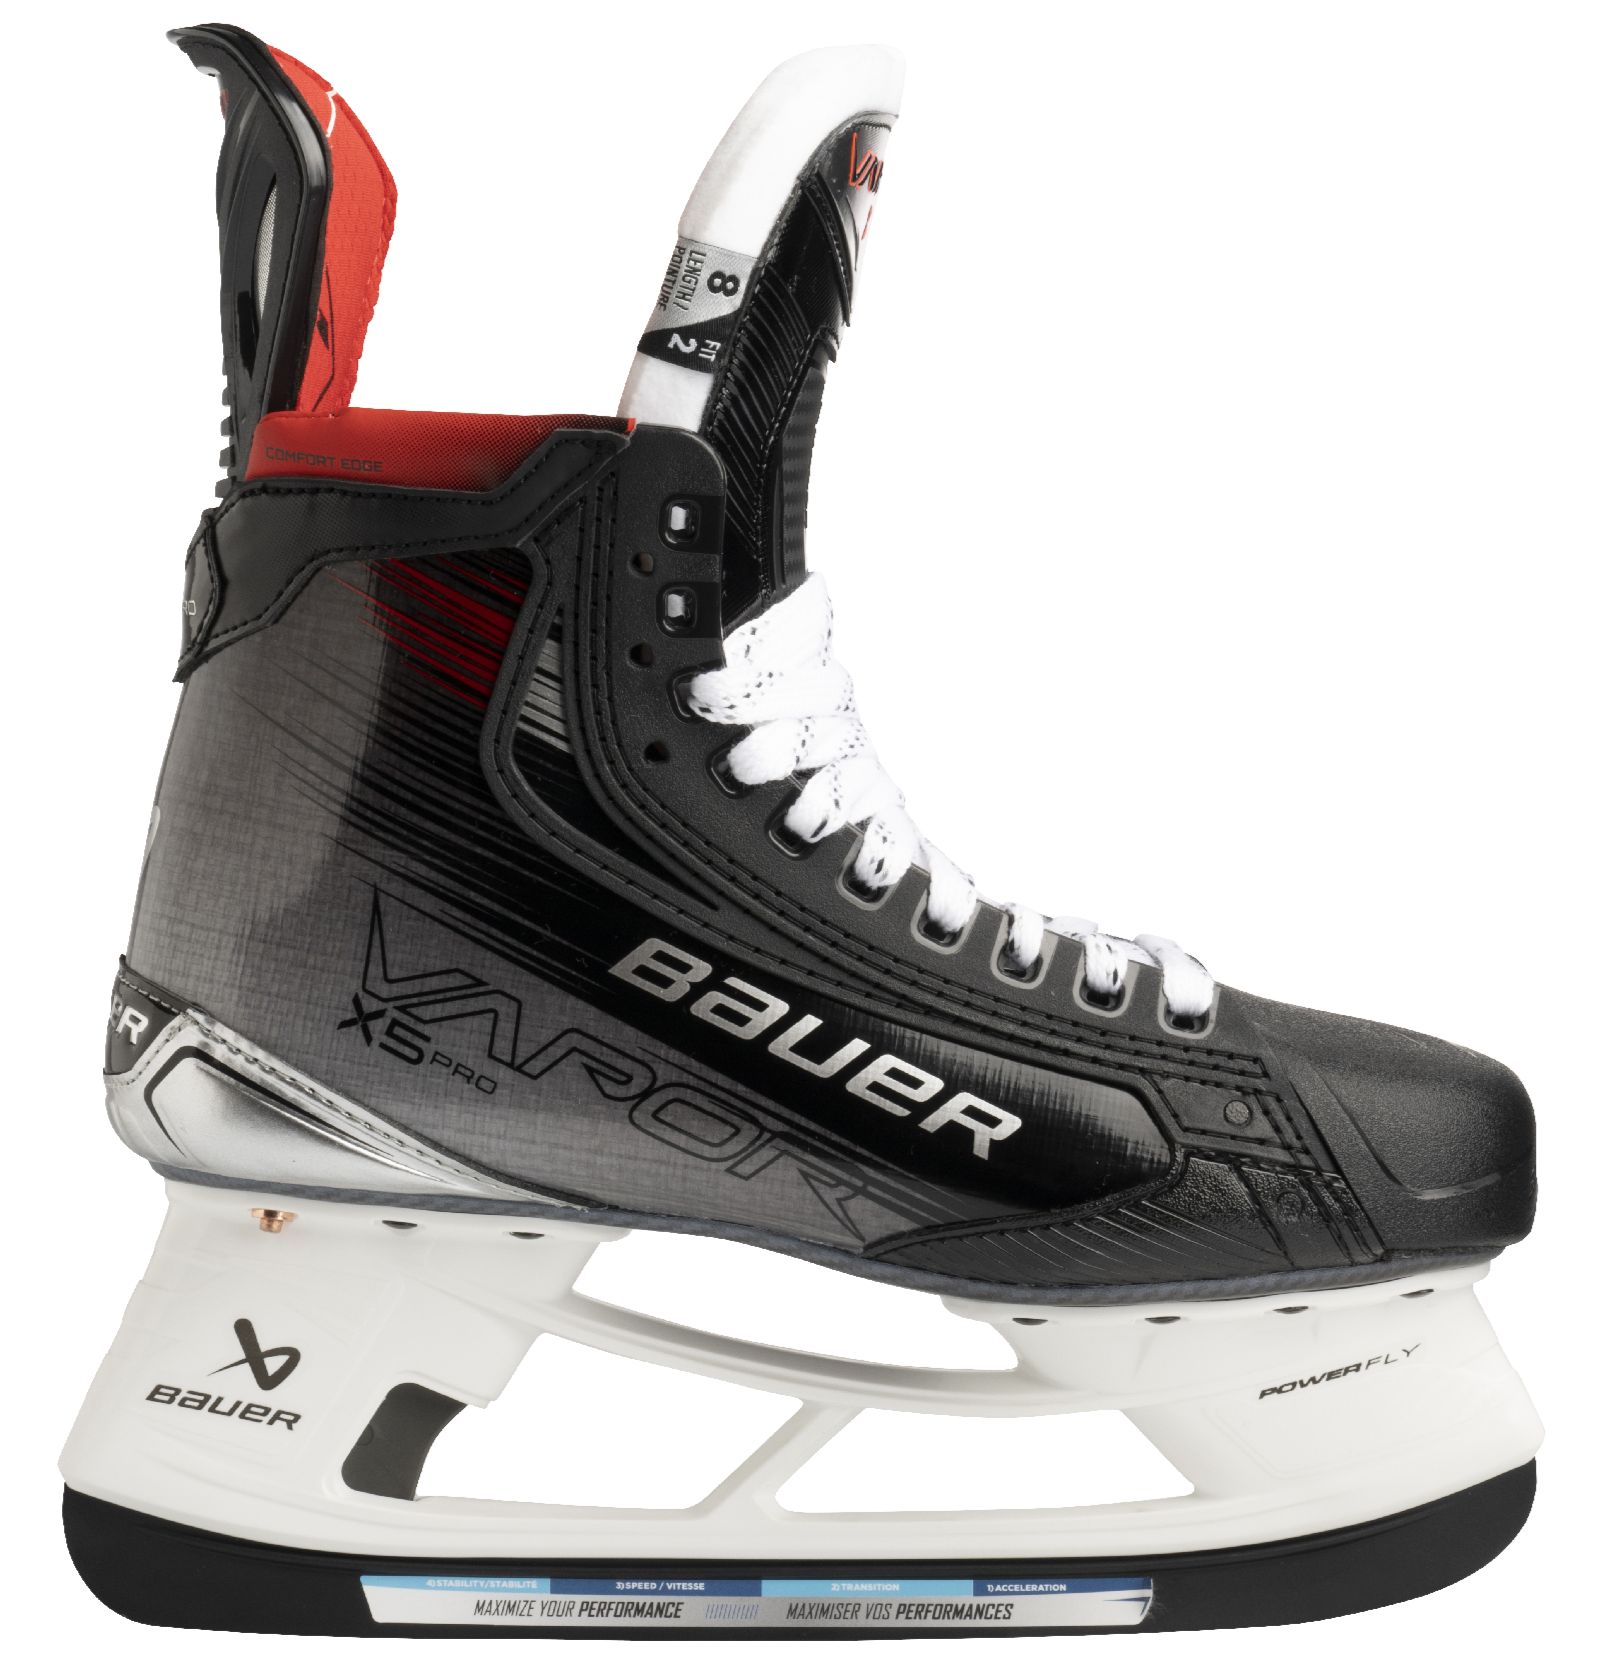 Bauer Vapor X5 Pro Senior Hockey Skates